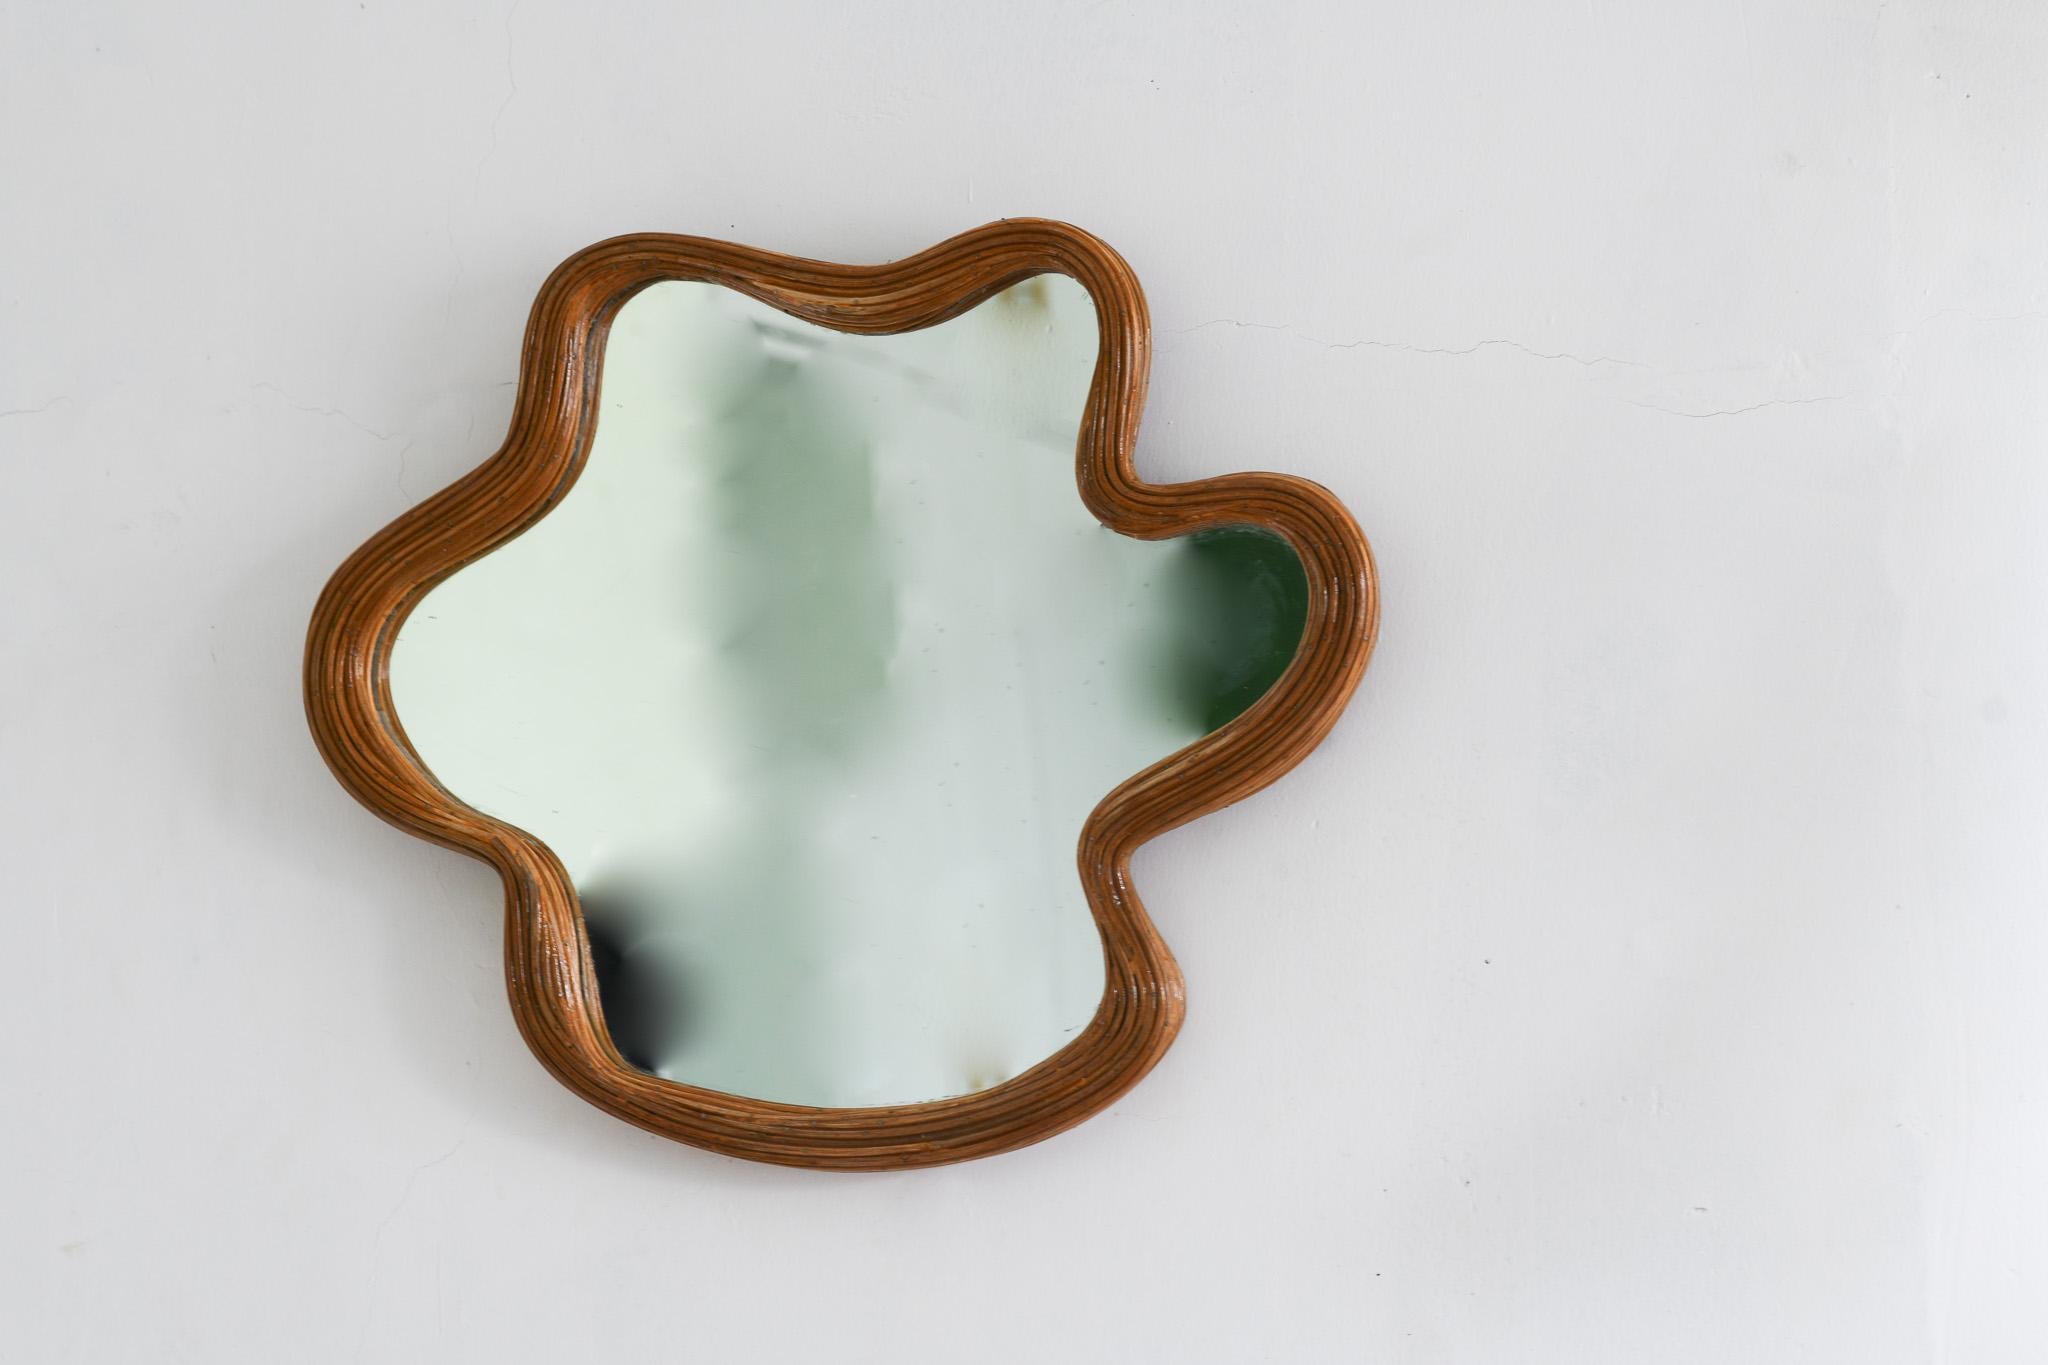 Ce miroir en osier de forme organique, fabriqué à la main, est une belle addition à toute maison. Fabriqué en rotin naturel, il apporte une touche de nature à l'intérieur. Fixez-le au mur pour un look unique et élégant. Fabriqué de manière experte,